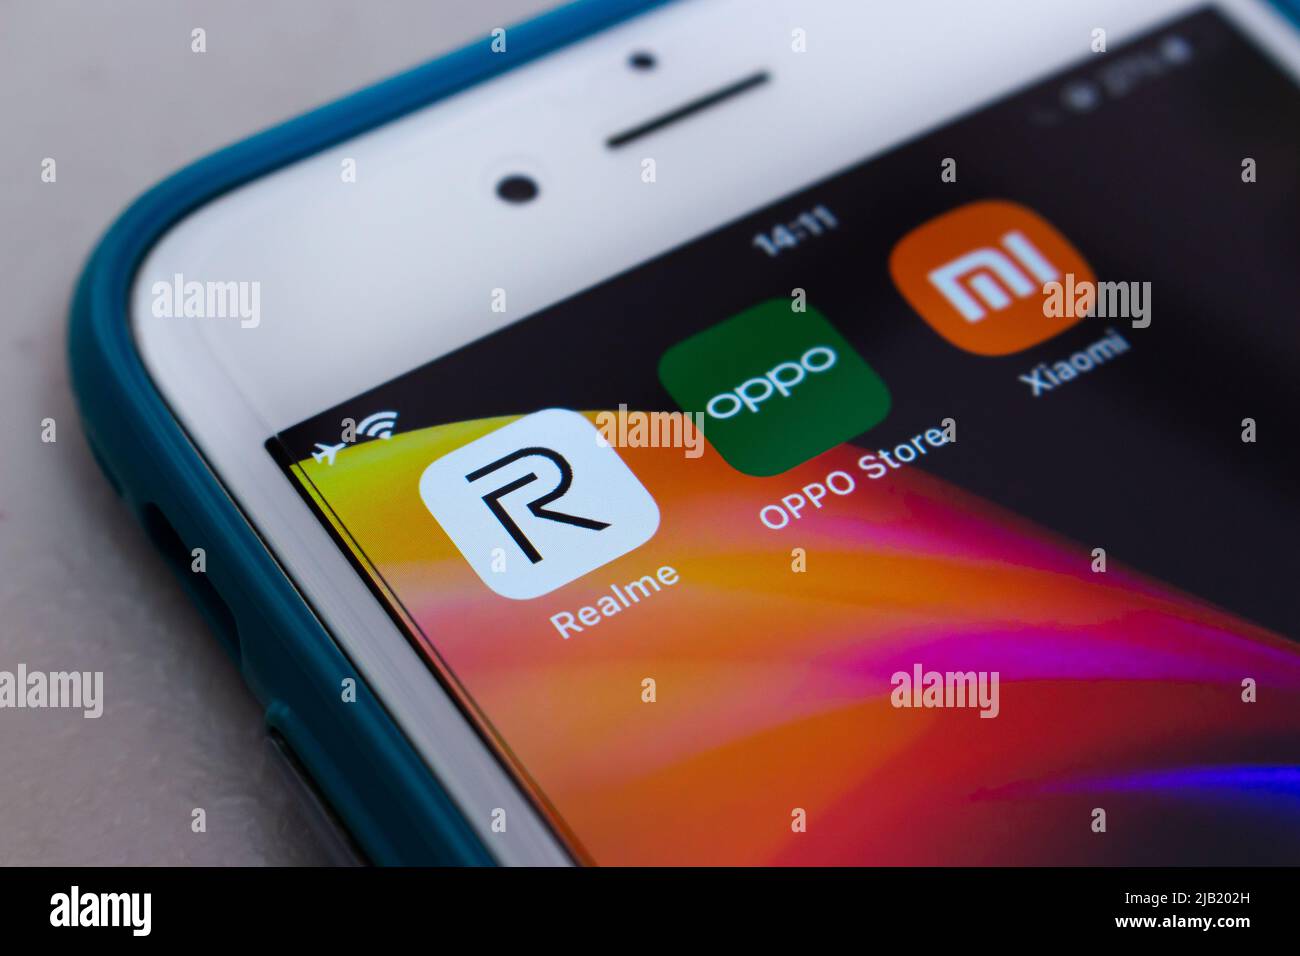 Realme, ein chinesischer Smartphone-Hersteller, der eine Tochtergesellschaft von BBK Electronics ist, mit Symbolen von Wettbewerbern (Oppo und Xiaomi) auf dem Smartphone Stockfoto